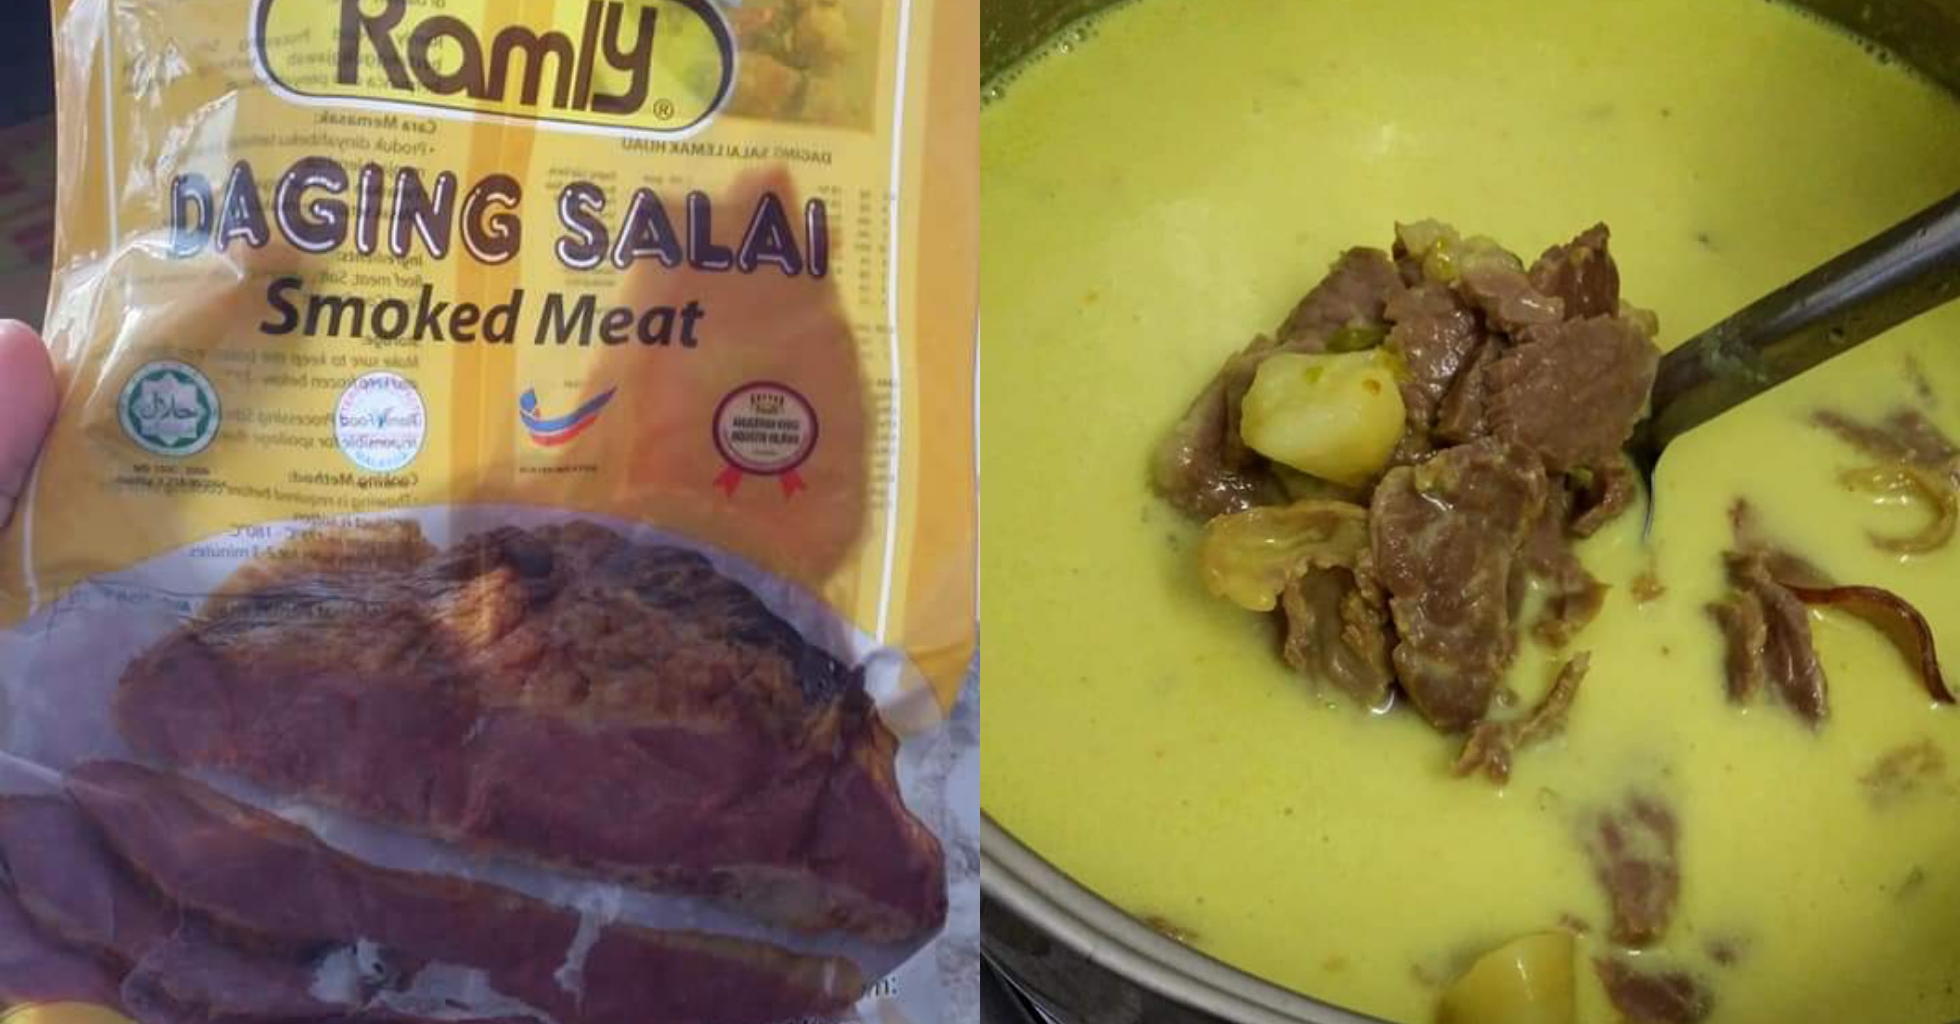 Resepi daging salai Ramly masak lemak cili api Negeri Sembilan style